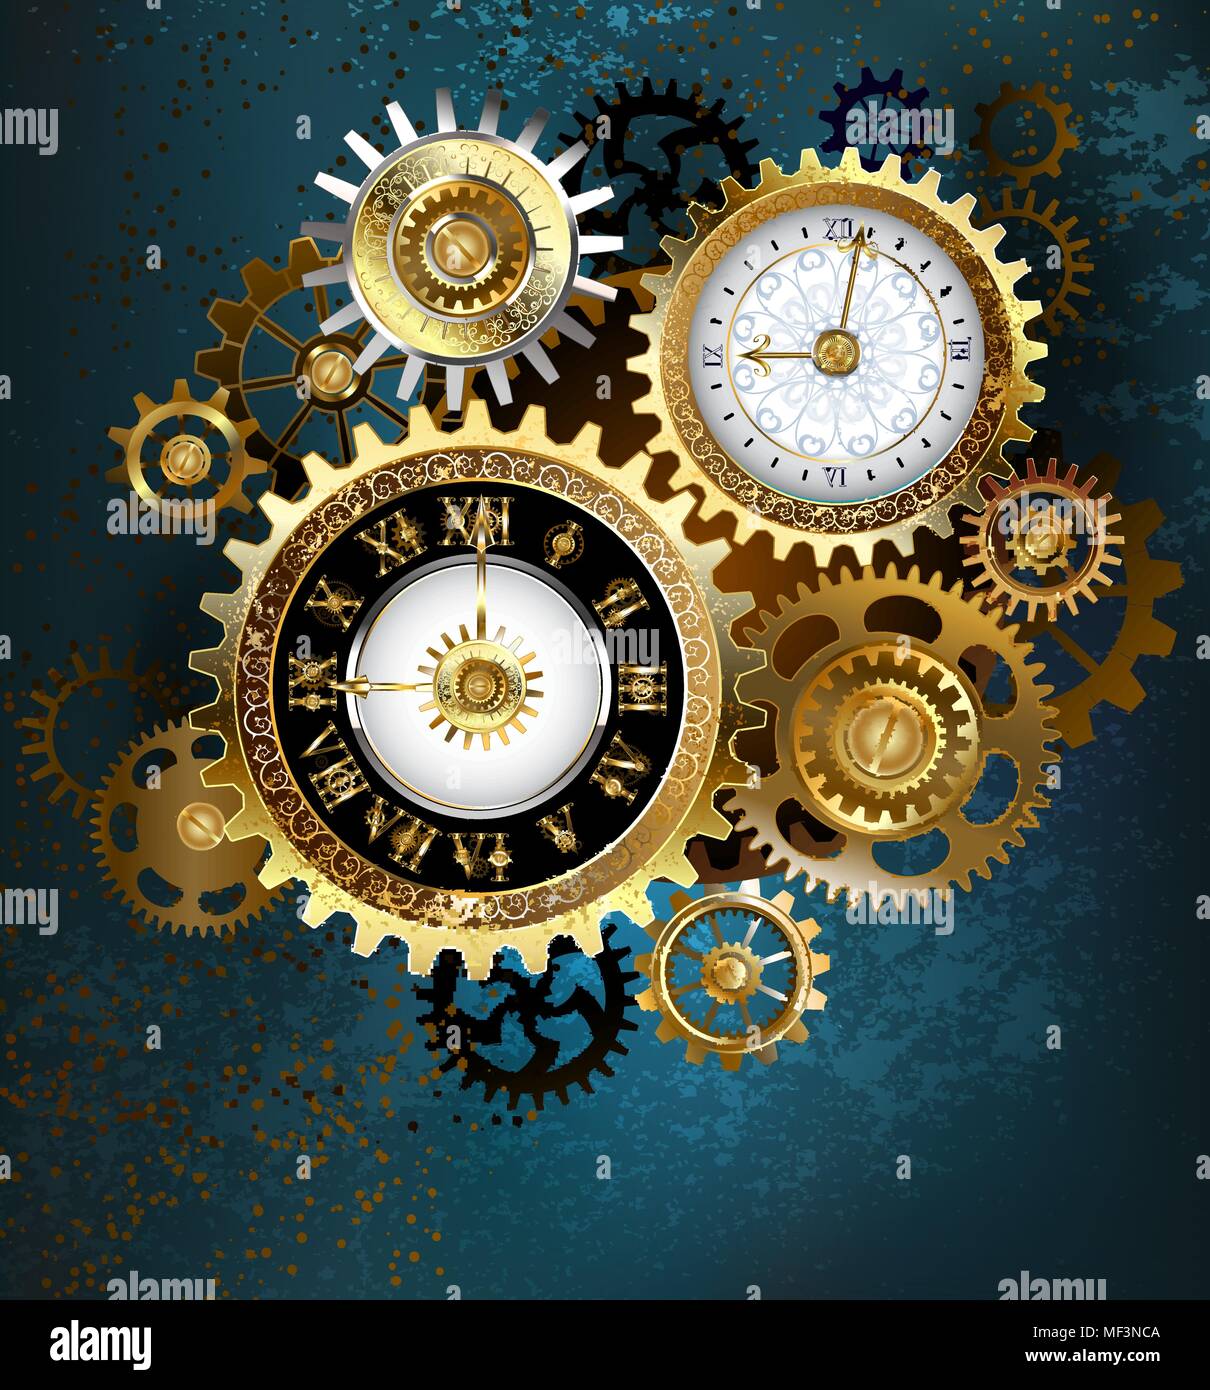 Horloge avec deux numéros d'or et de metal gears sur fond bleu turquoise. Style Steampunk. Illustration de Vecteur